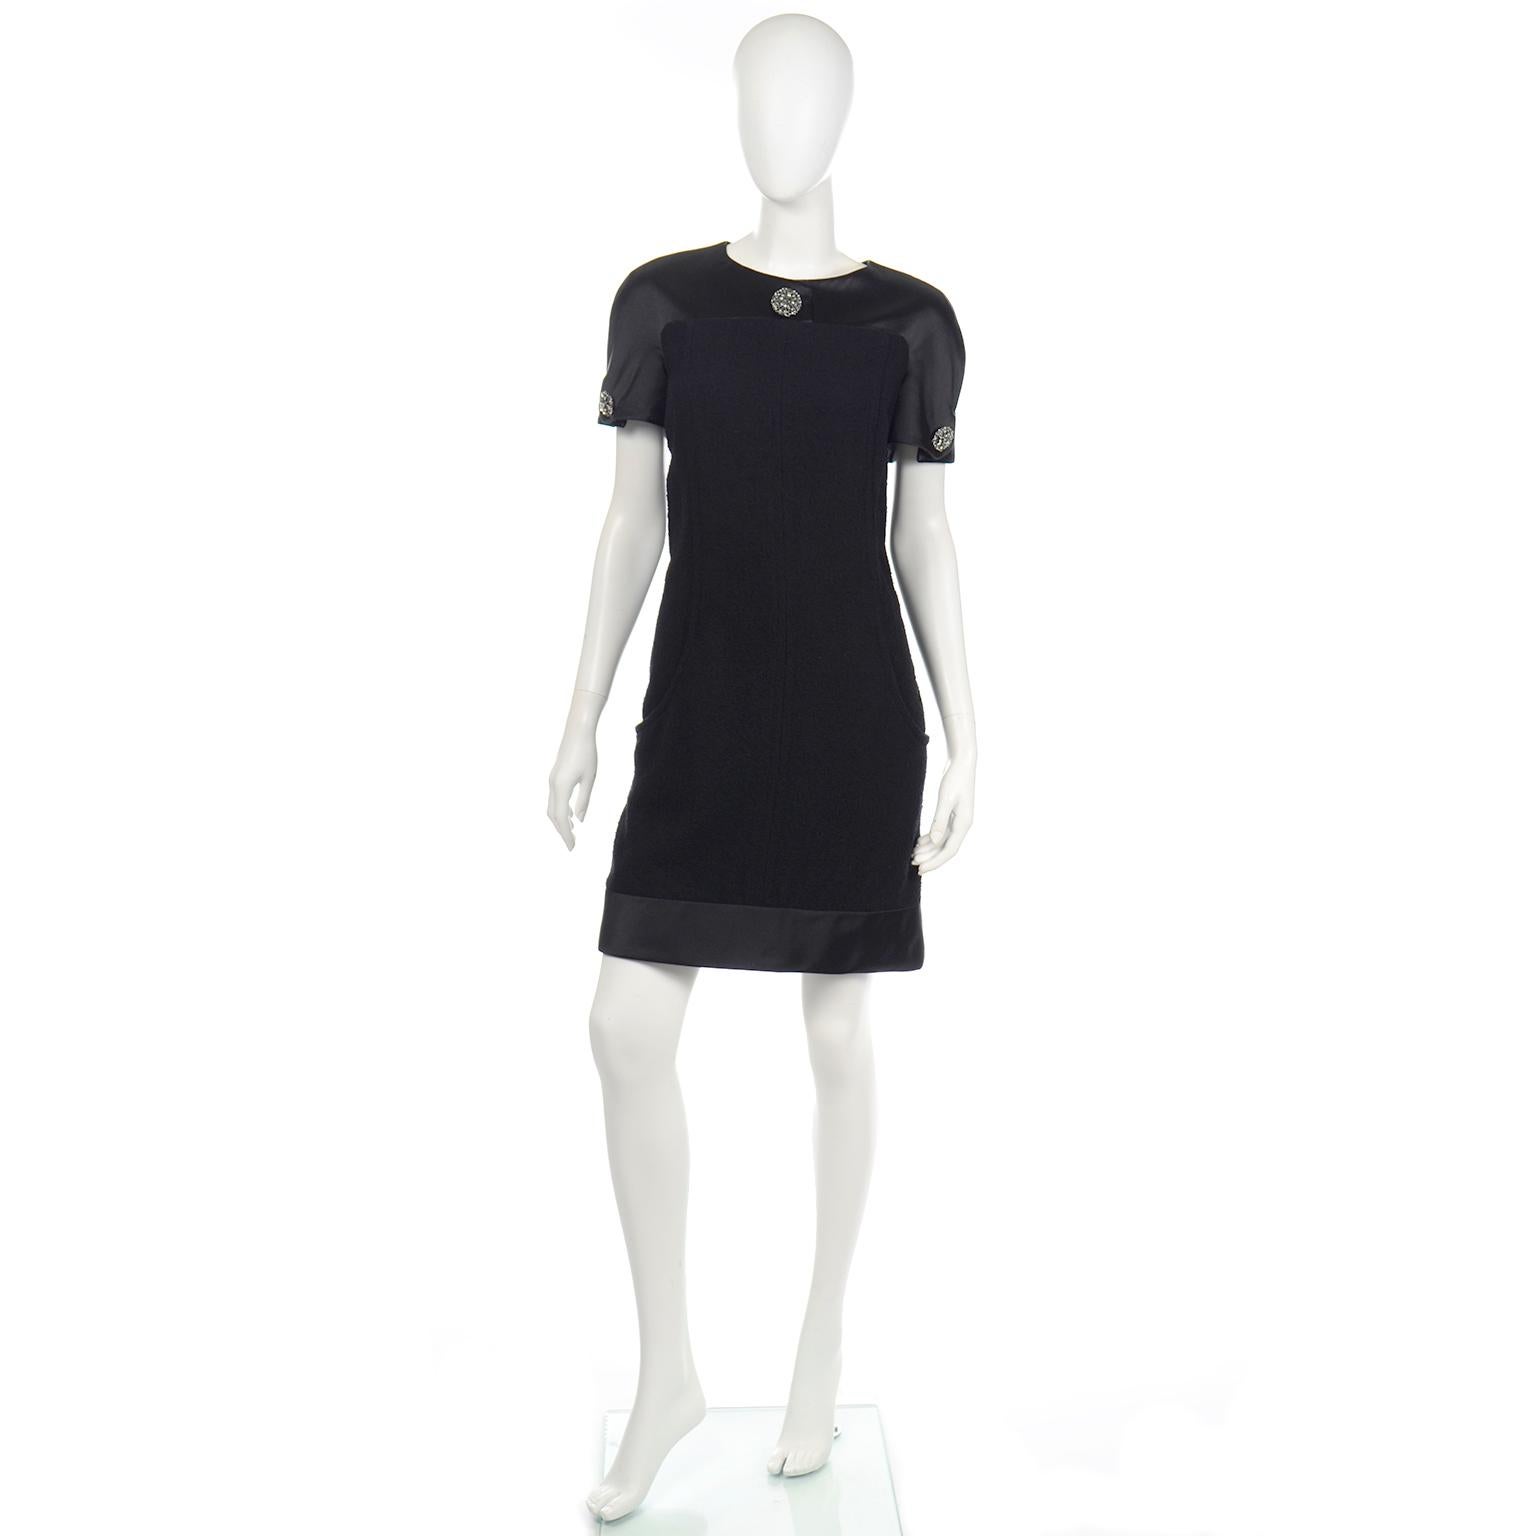 Dies ist ein schönes Chanel Herbst 2015 Kleid in schwarzer Bouclé Wolle und Seide. Der Körper des Kleides ist aus Bouclé-Wolle und schwarzer Seidensatin findet sich am Saum, am oberen Mieder und an den Ärmeln. Es gibt schöne Gripoix-Knöpfe, darunter